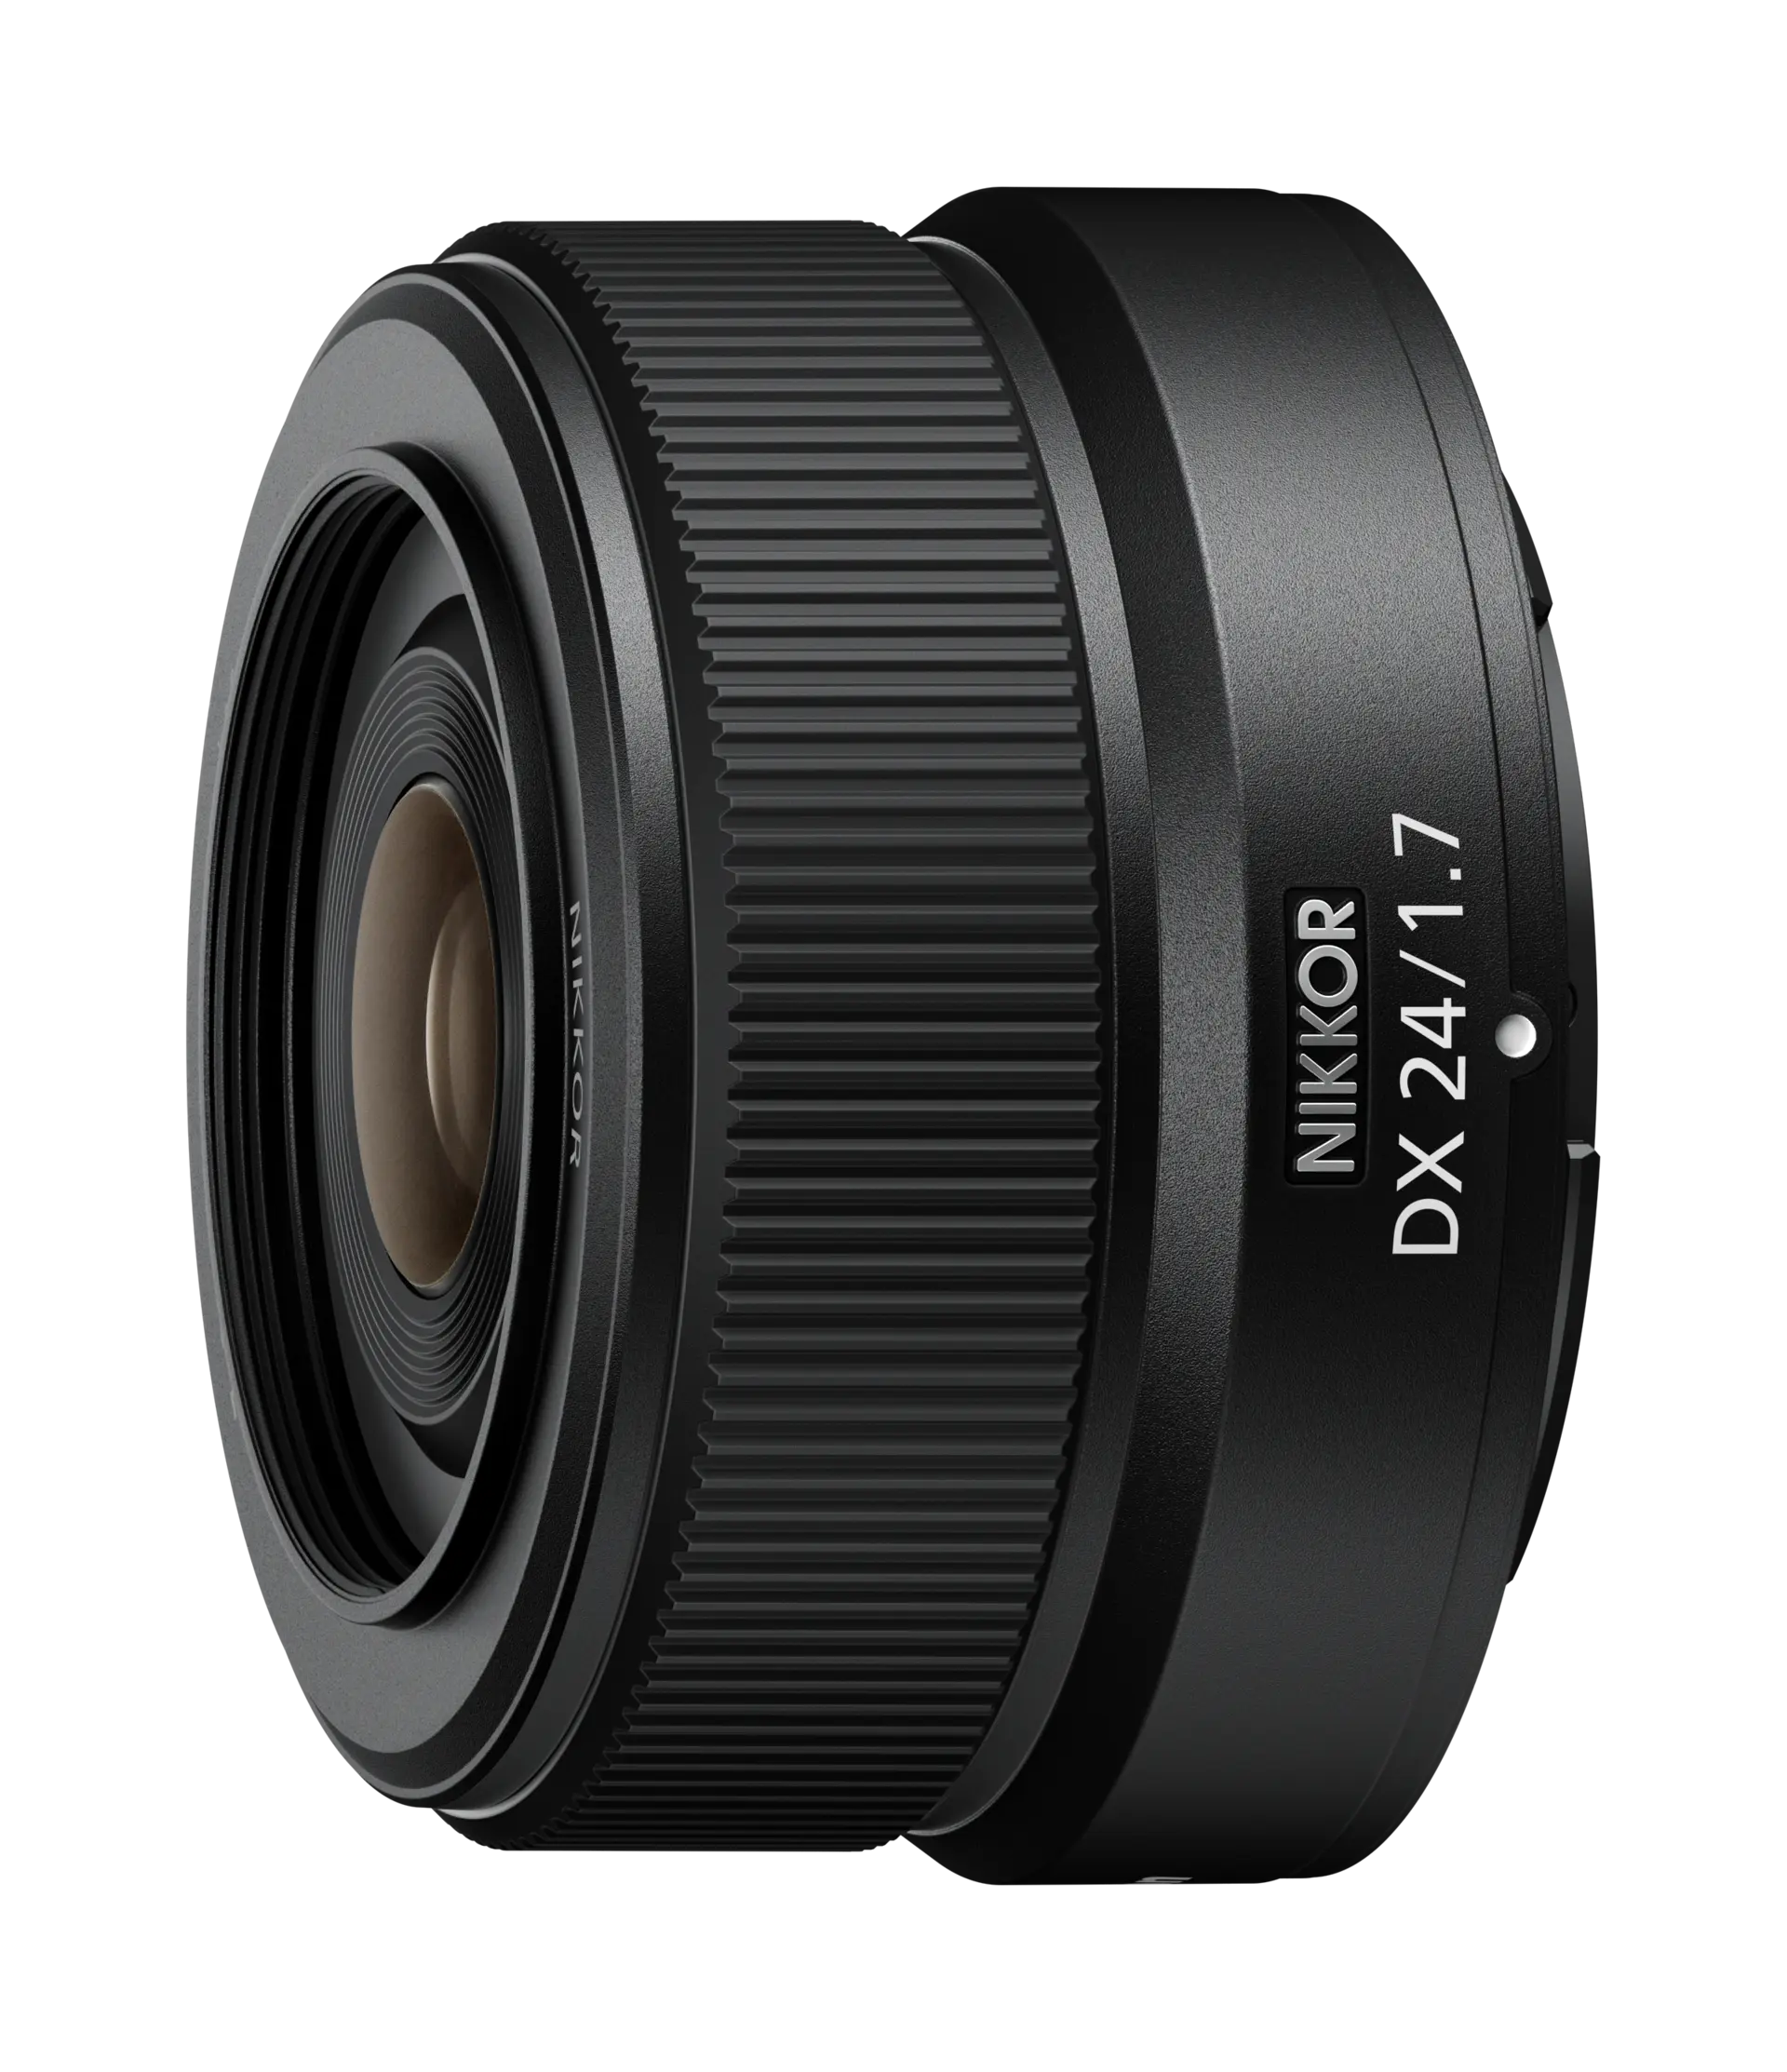 NIKKOR Z DX 24mm f/1.7 Fast Compact Prime Lens | Nikon